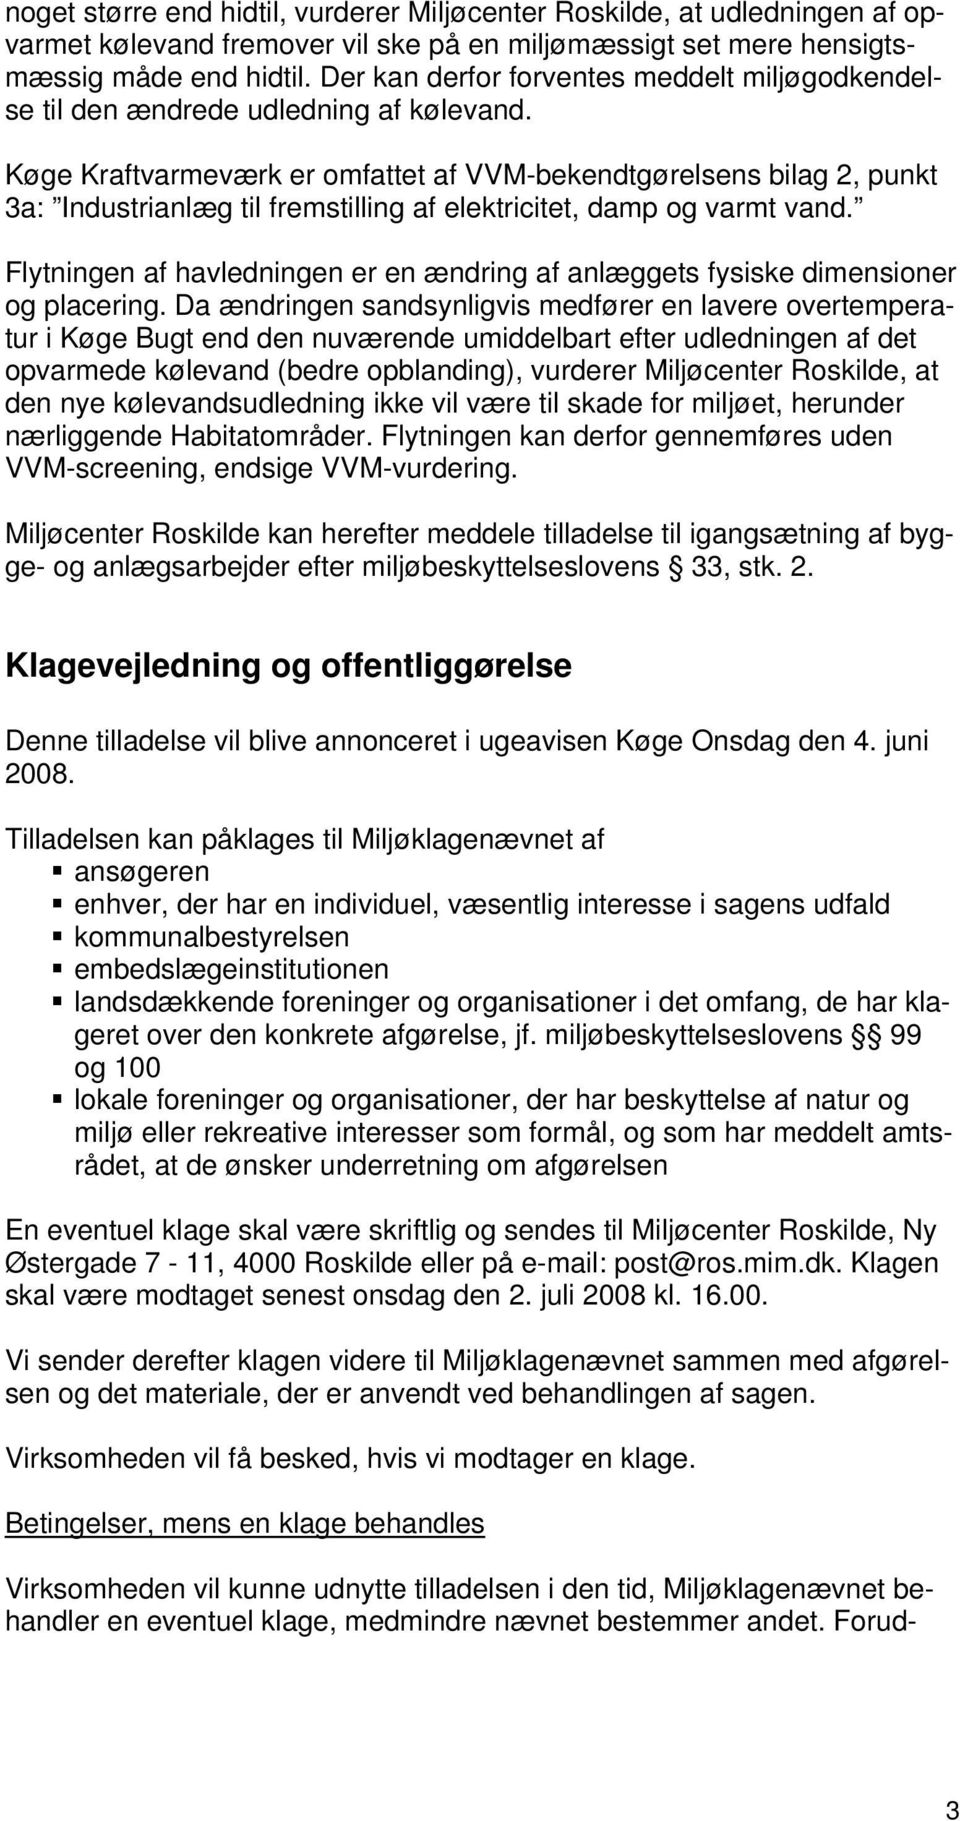 Køge Kraftvarmeværk er omfattet af VVM-bekendtgørelsens bilag 2, punkt 3a: Industrianlæg til fremstilling af elektricitet, damp og varmt vand.